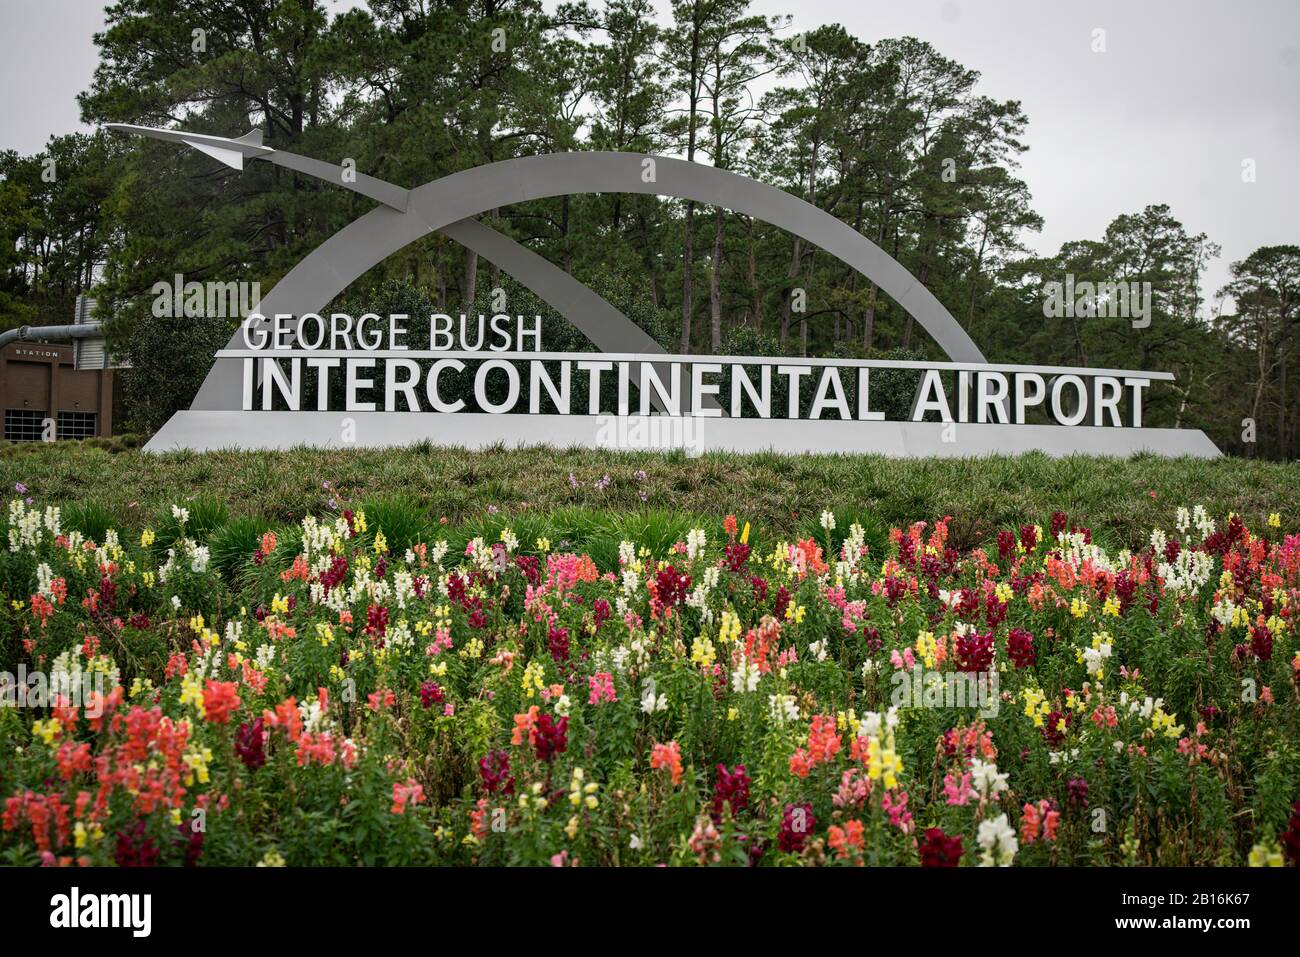 Houston, Texas - 11 février 2020 : panneau de l'aéroport intercontinental George Bush (IAH) Banque D'Images